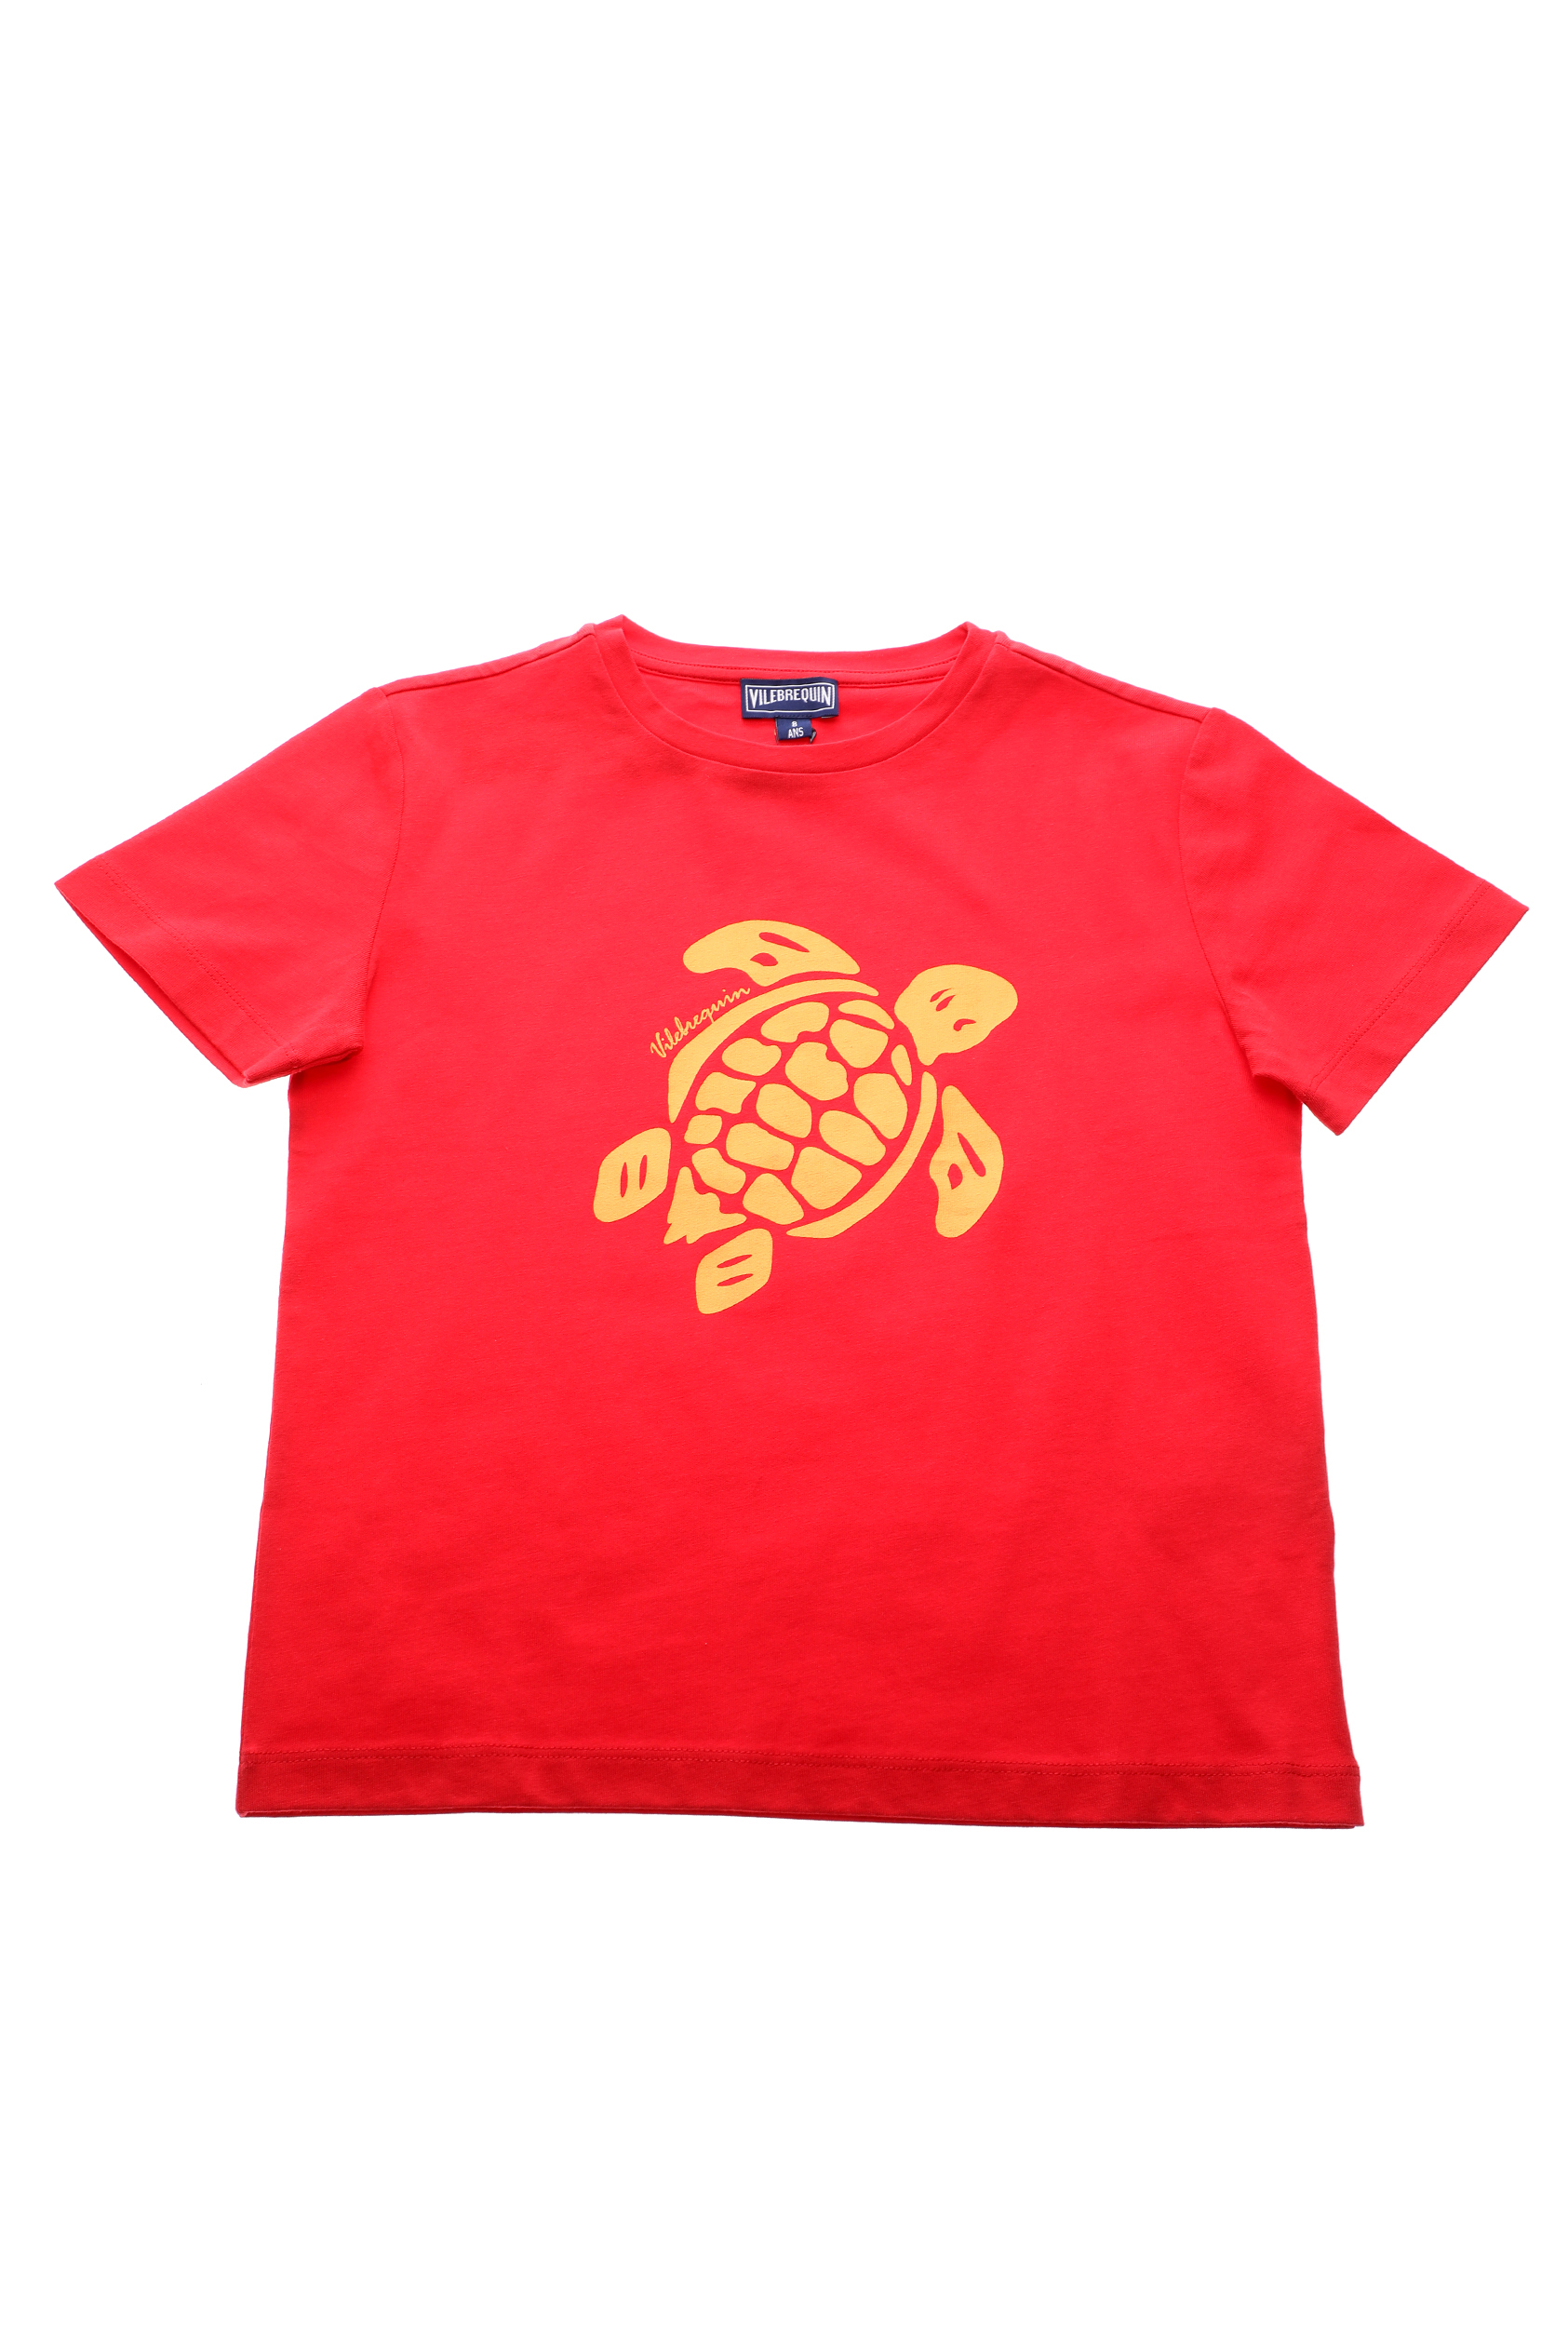 Παιδικά/Boys/Ρούχα/Μπλούζες VILEBREQUIN - Παιδικό t-shirt VILEBREQUIN TANGON κόκκινο